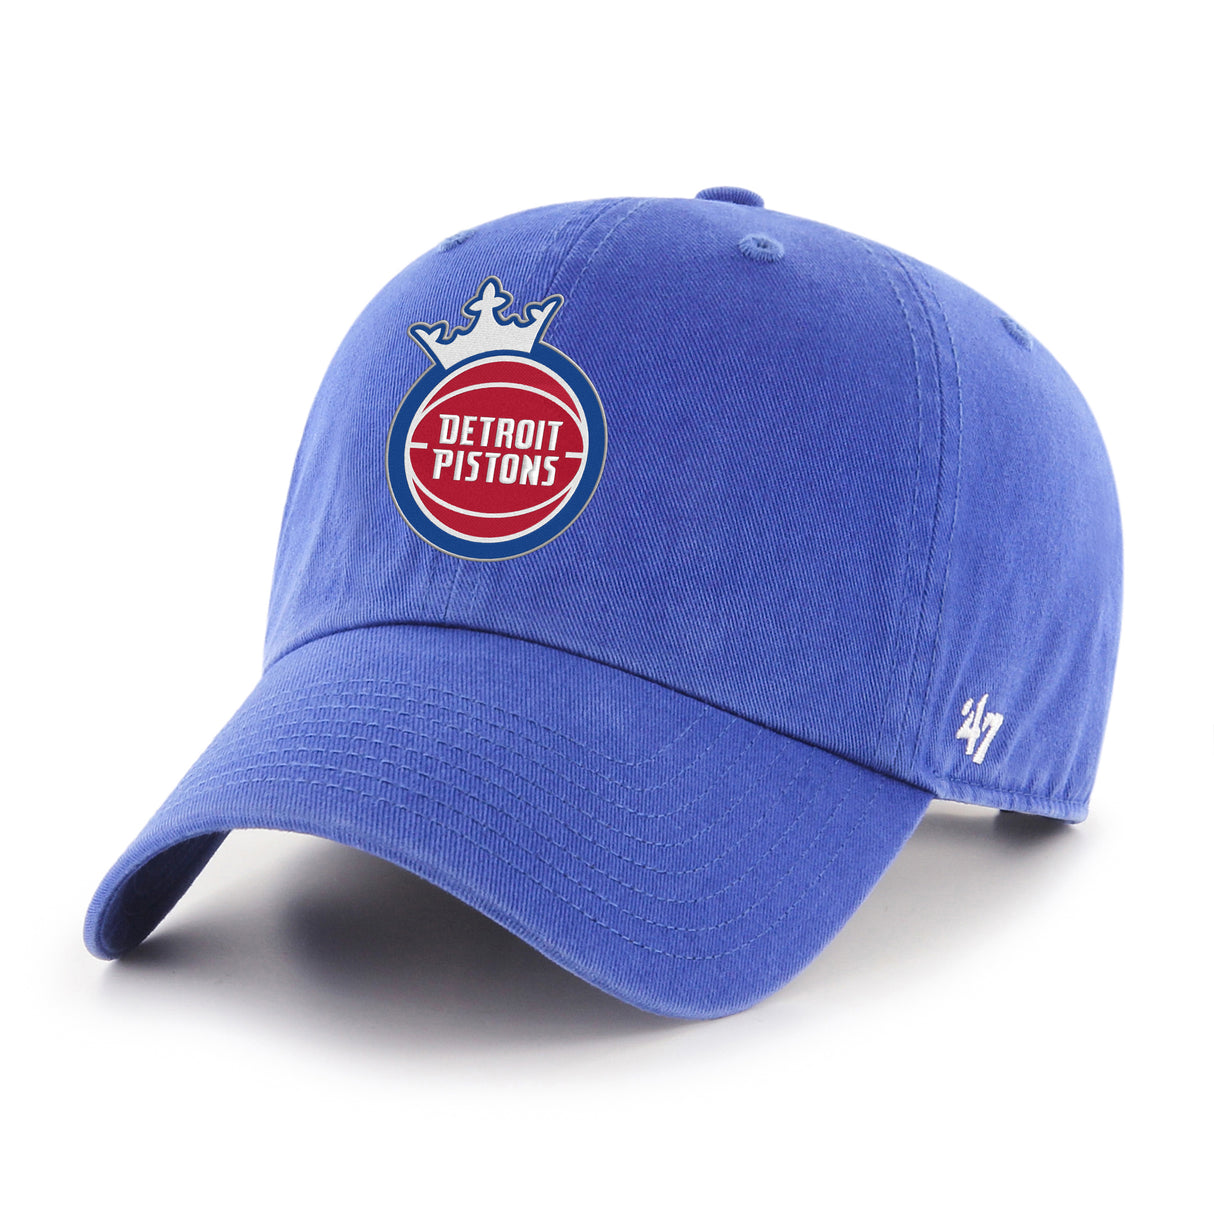 Detroit Pistons '47 Clean Up Hat